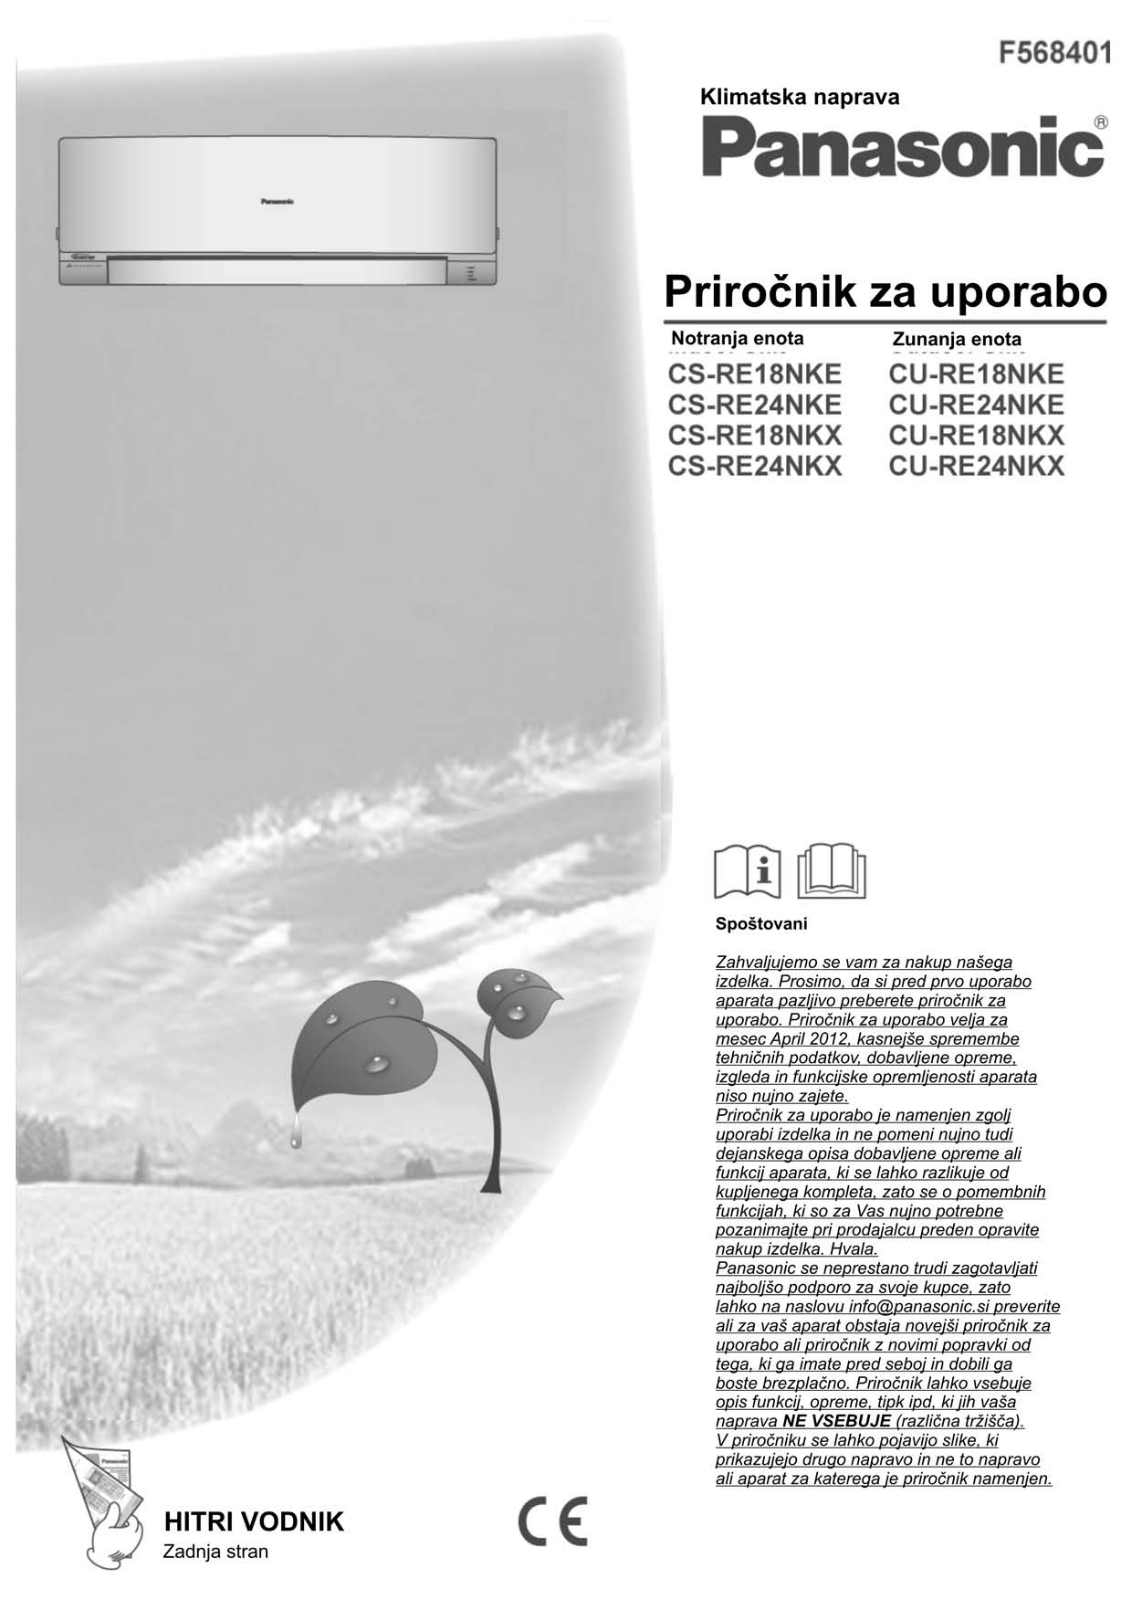 Panasonic CS-RE18NKX, CU-RE24NKX, CU-RE24NKE, CS-RE24NKX, CS-RE18NKE User Manual